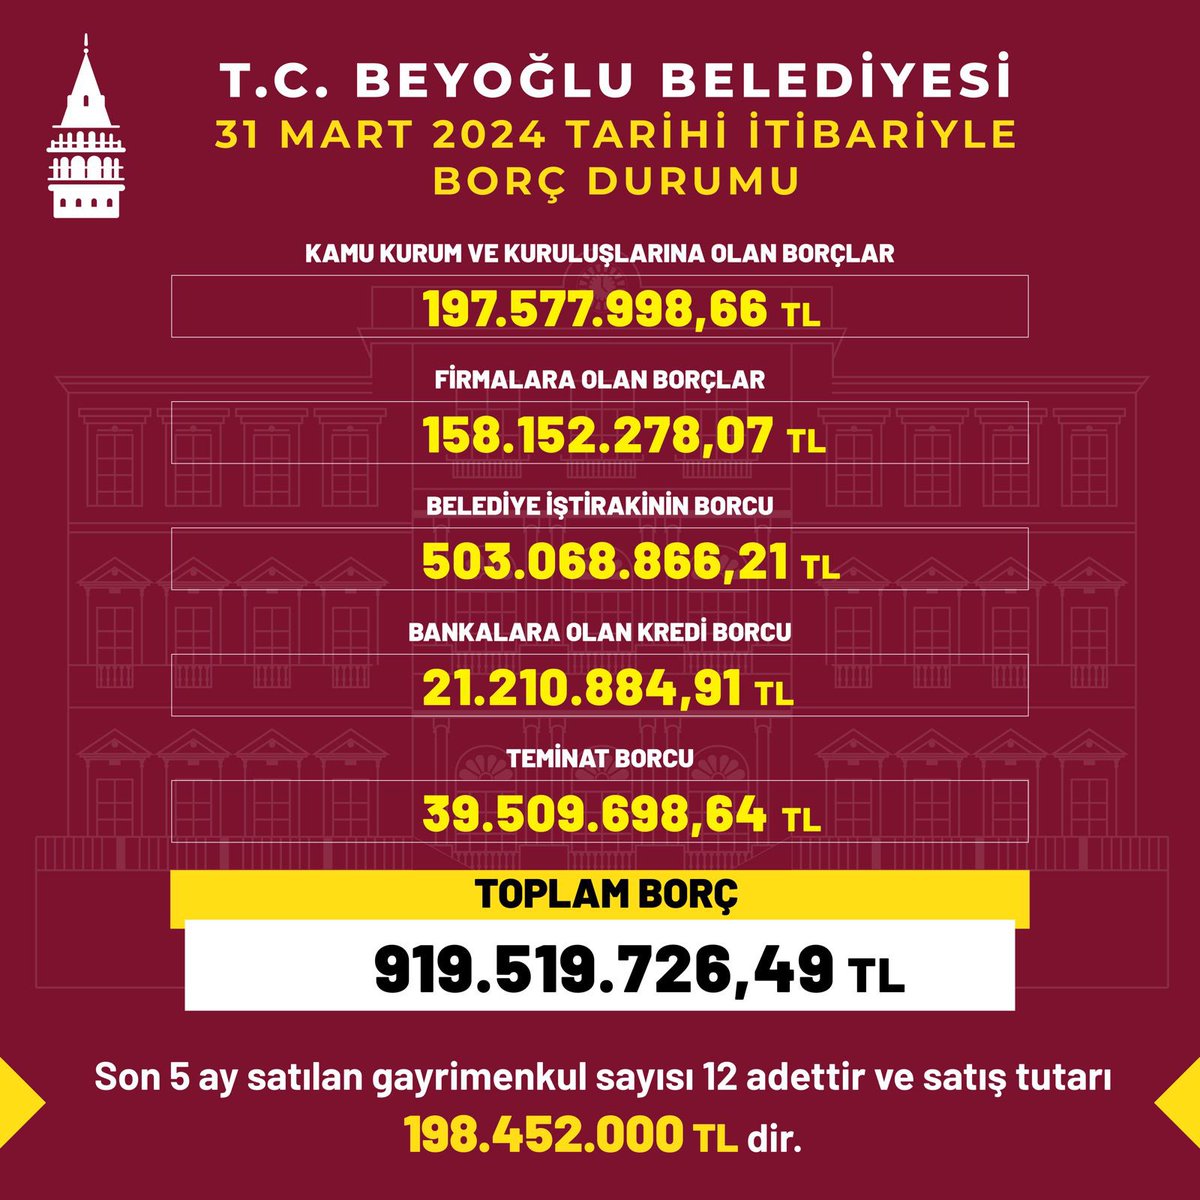 Beyoğlu Belediyesi'nden beklenen borç durum tablosu geldi.